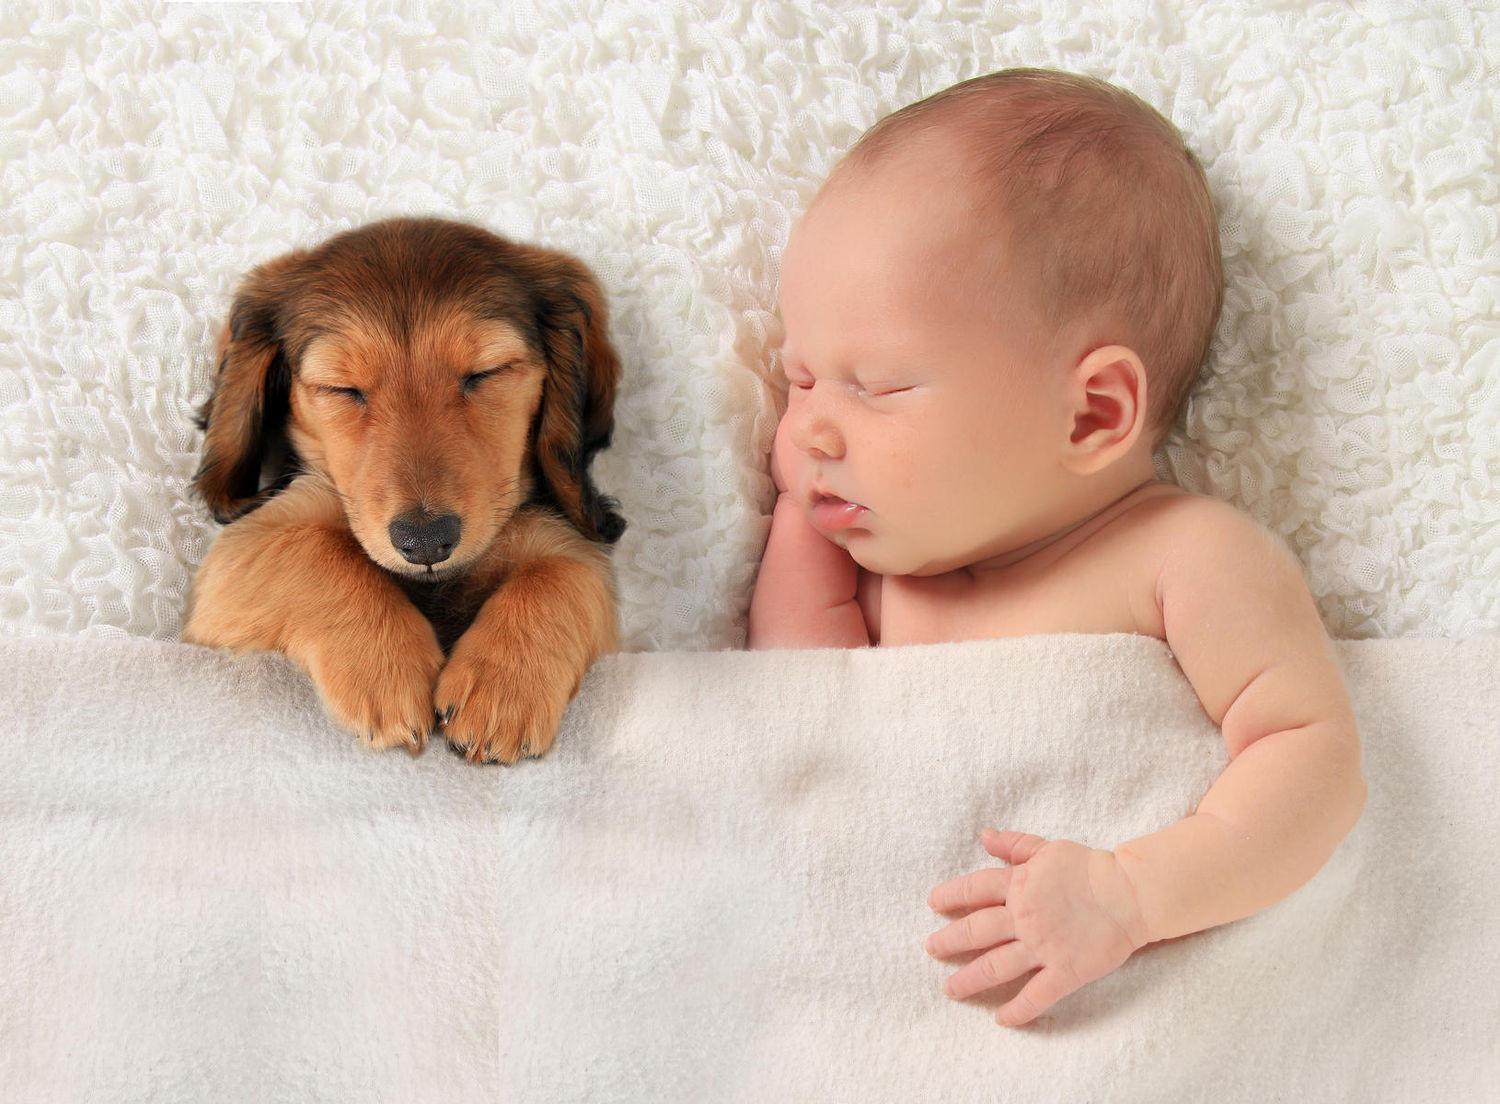 Μωρό, σκύλο ή άλλο ενήλικα: Ποιον συμπονούν περισσότερο οι άνθρωποι;